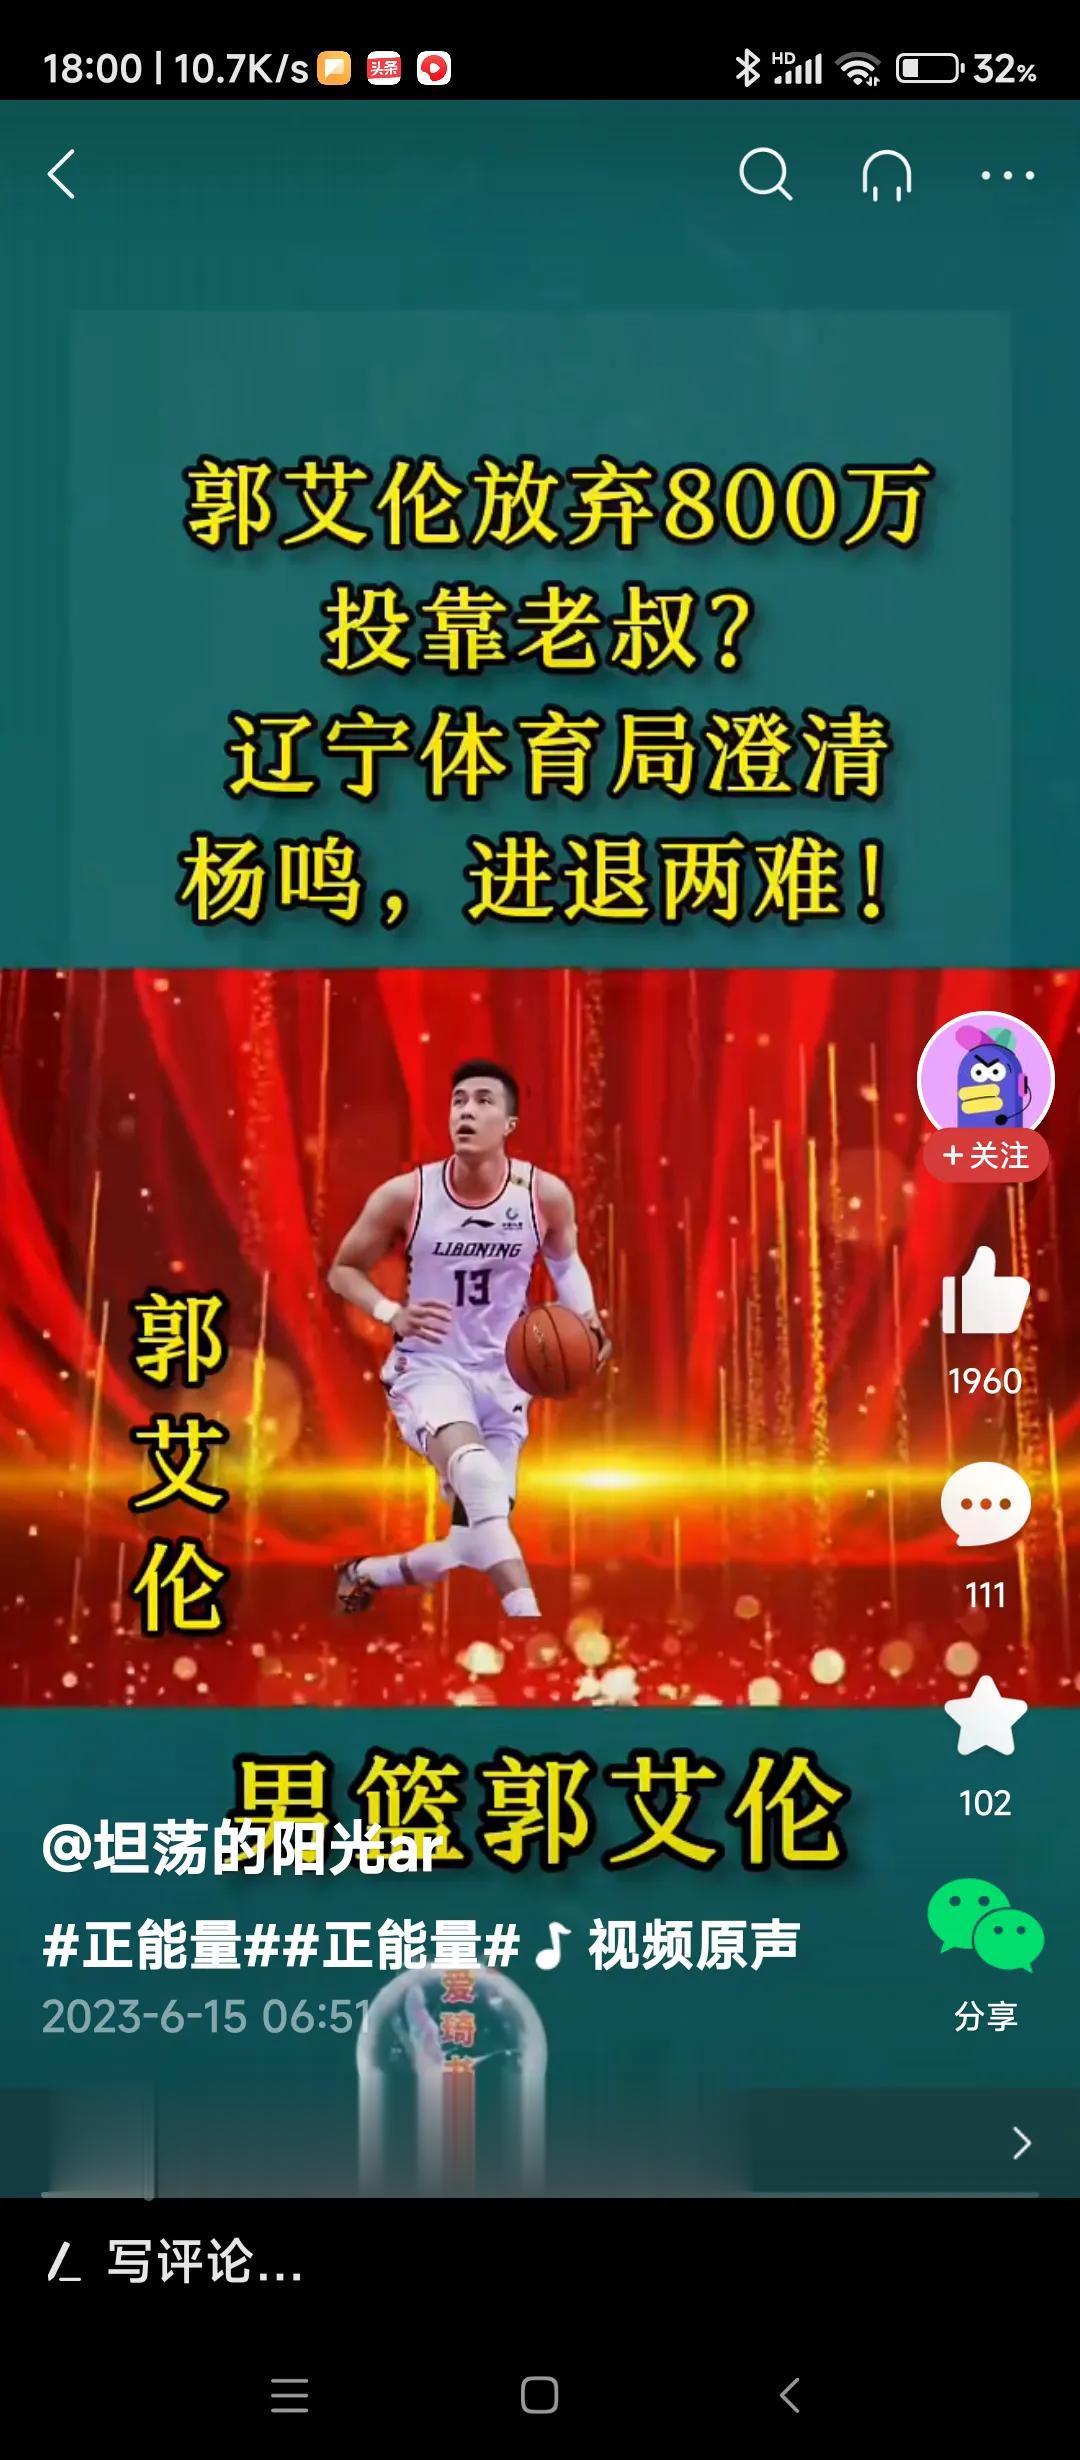 影响收视率！
没有了郭艾伦的中国男篮的比赛，我们只能选择不看！
应该说，没有郭艾(2)